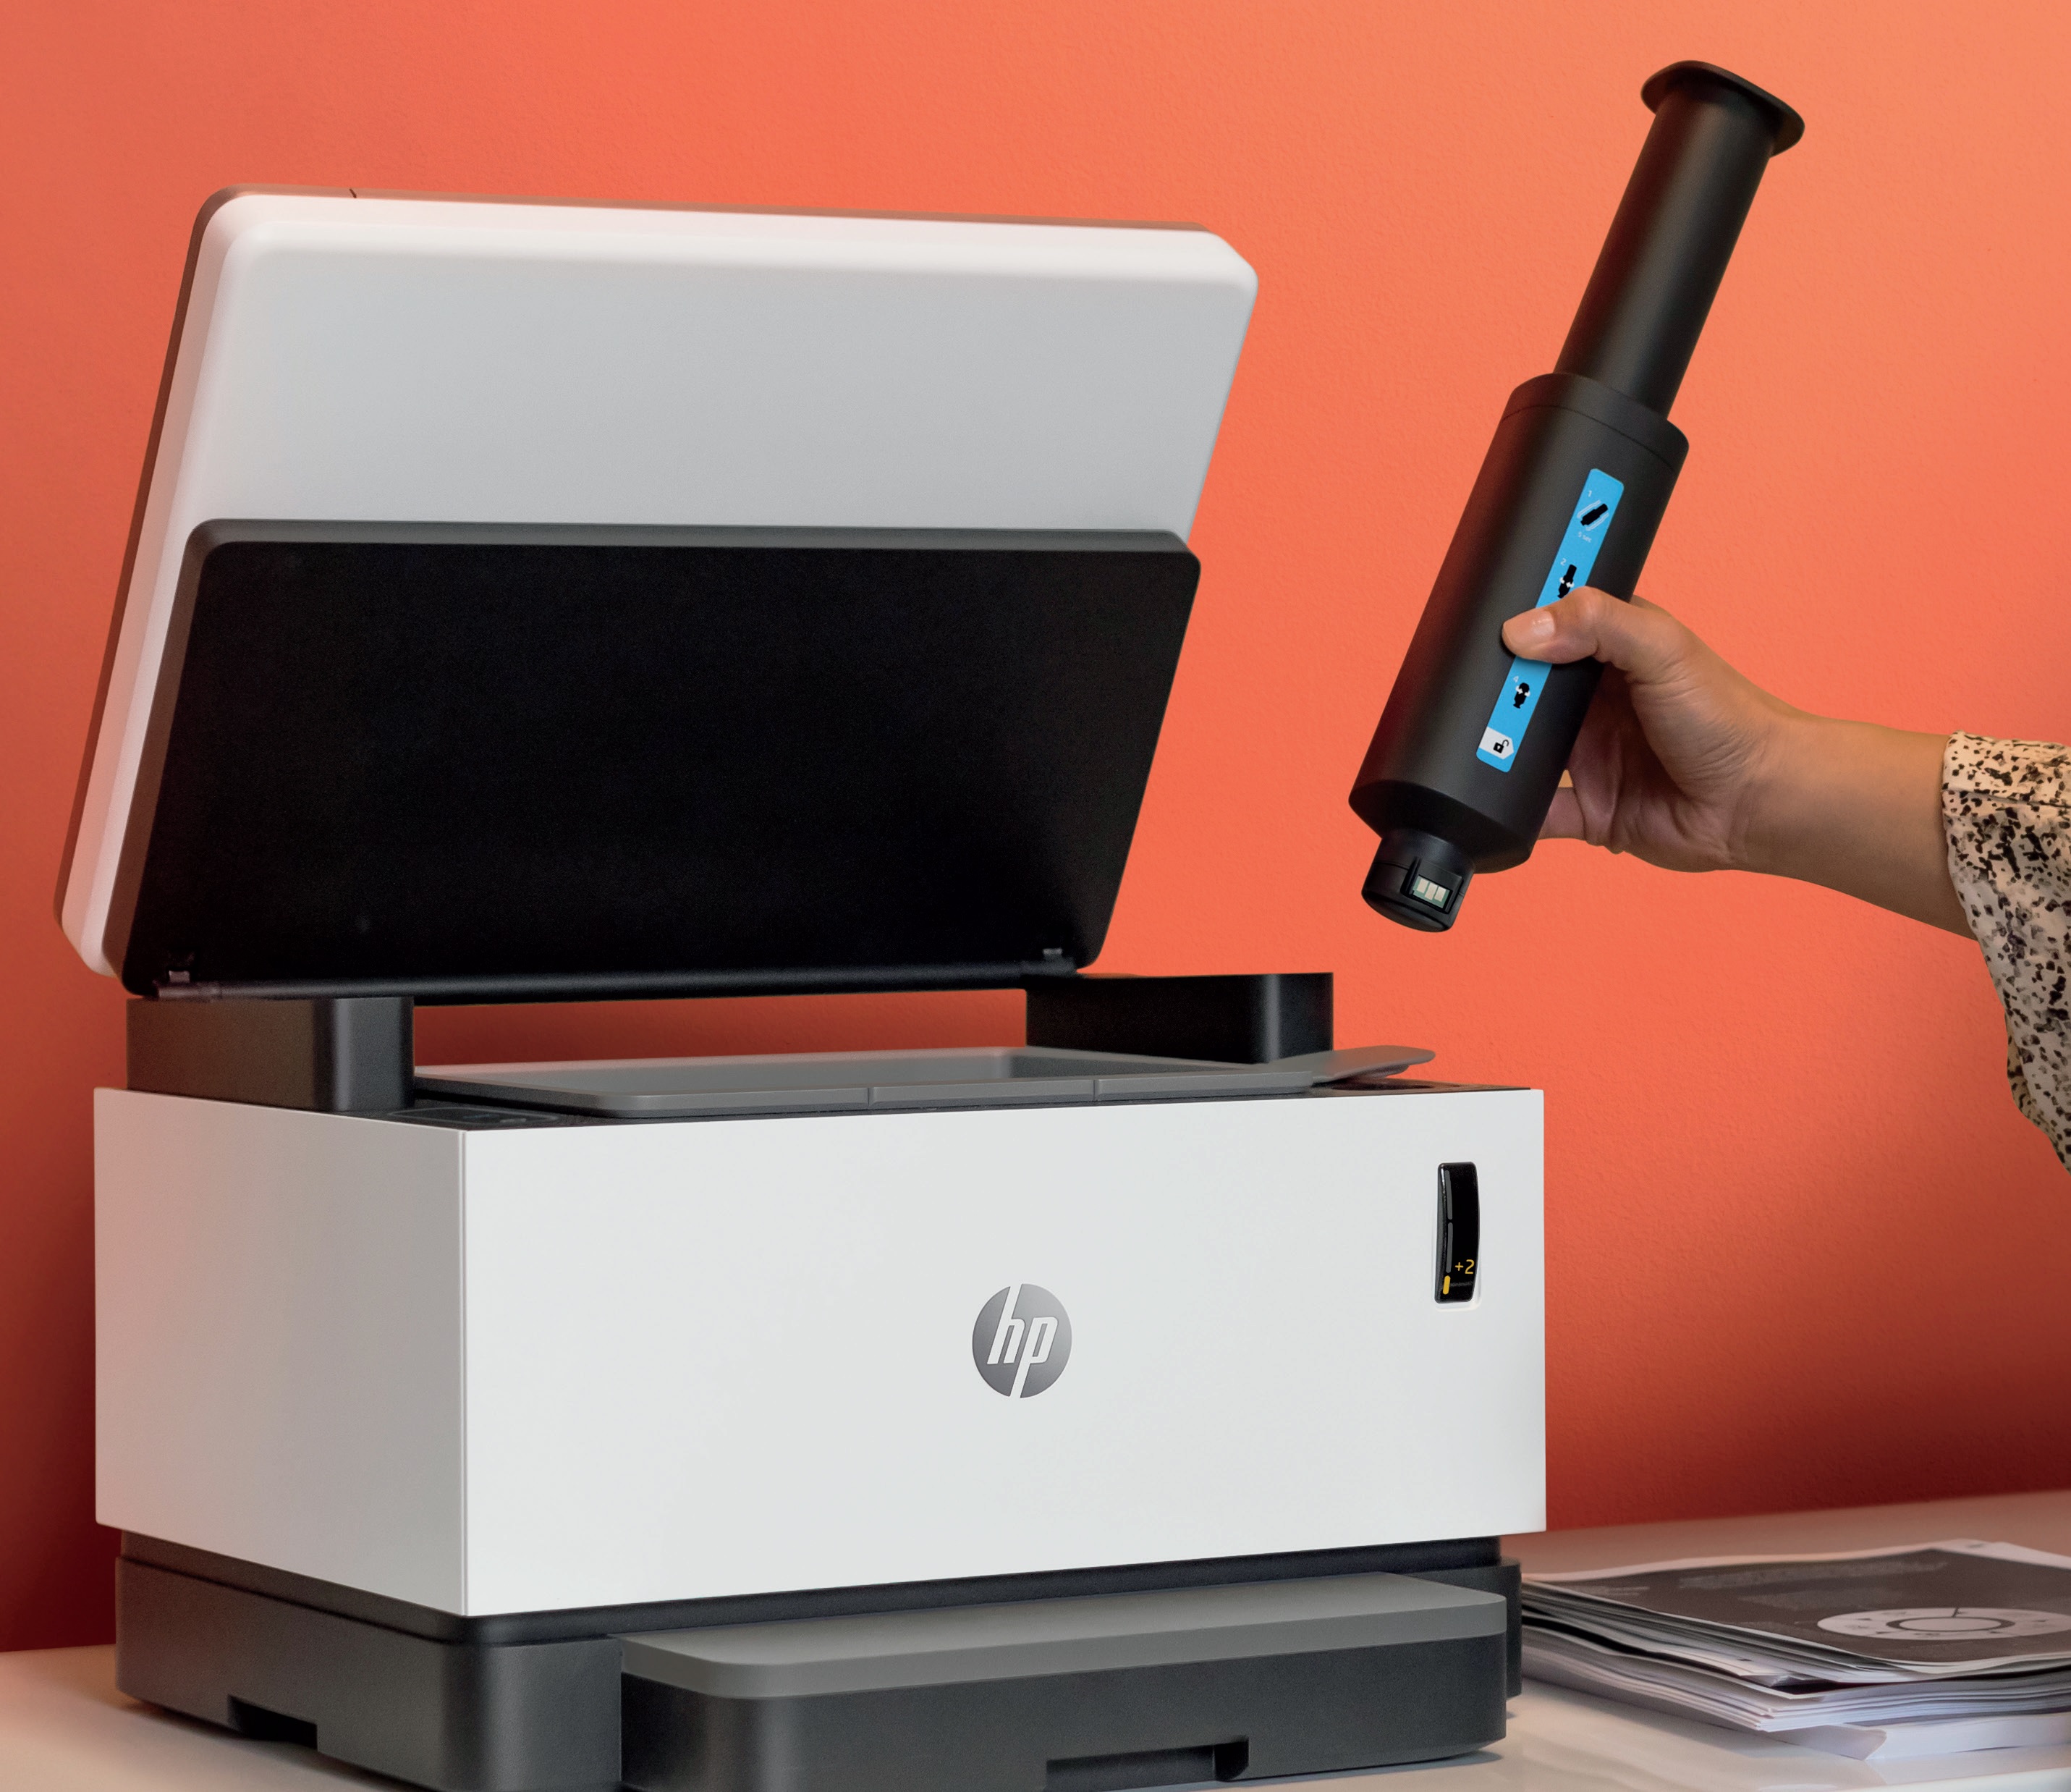 Máy in HP Laser Neverstop là gì? Tại sao bạn nên quan tâm về các dòng máy in Laser mới của HP?